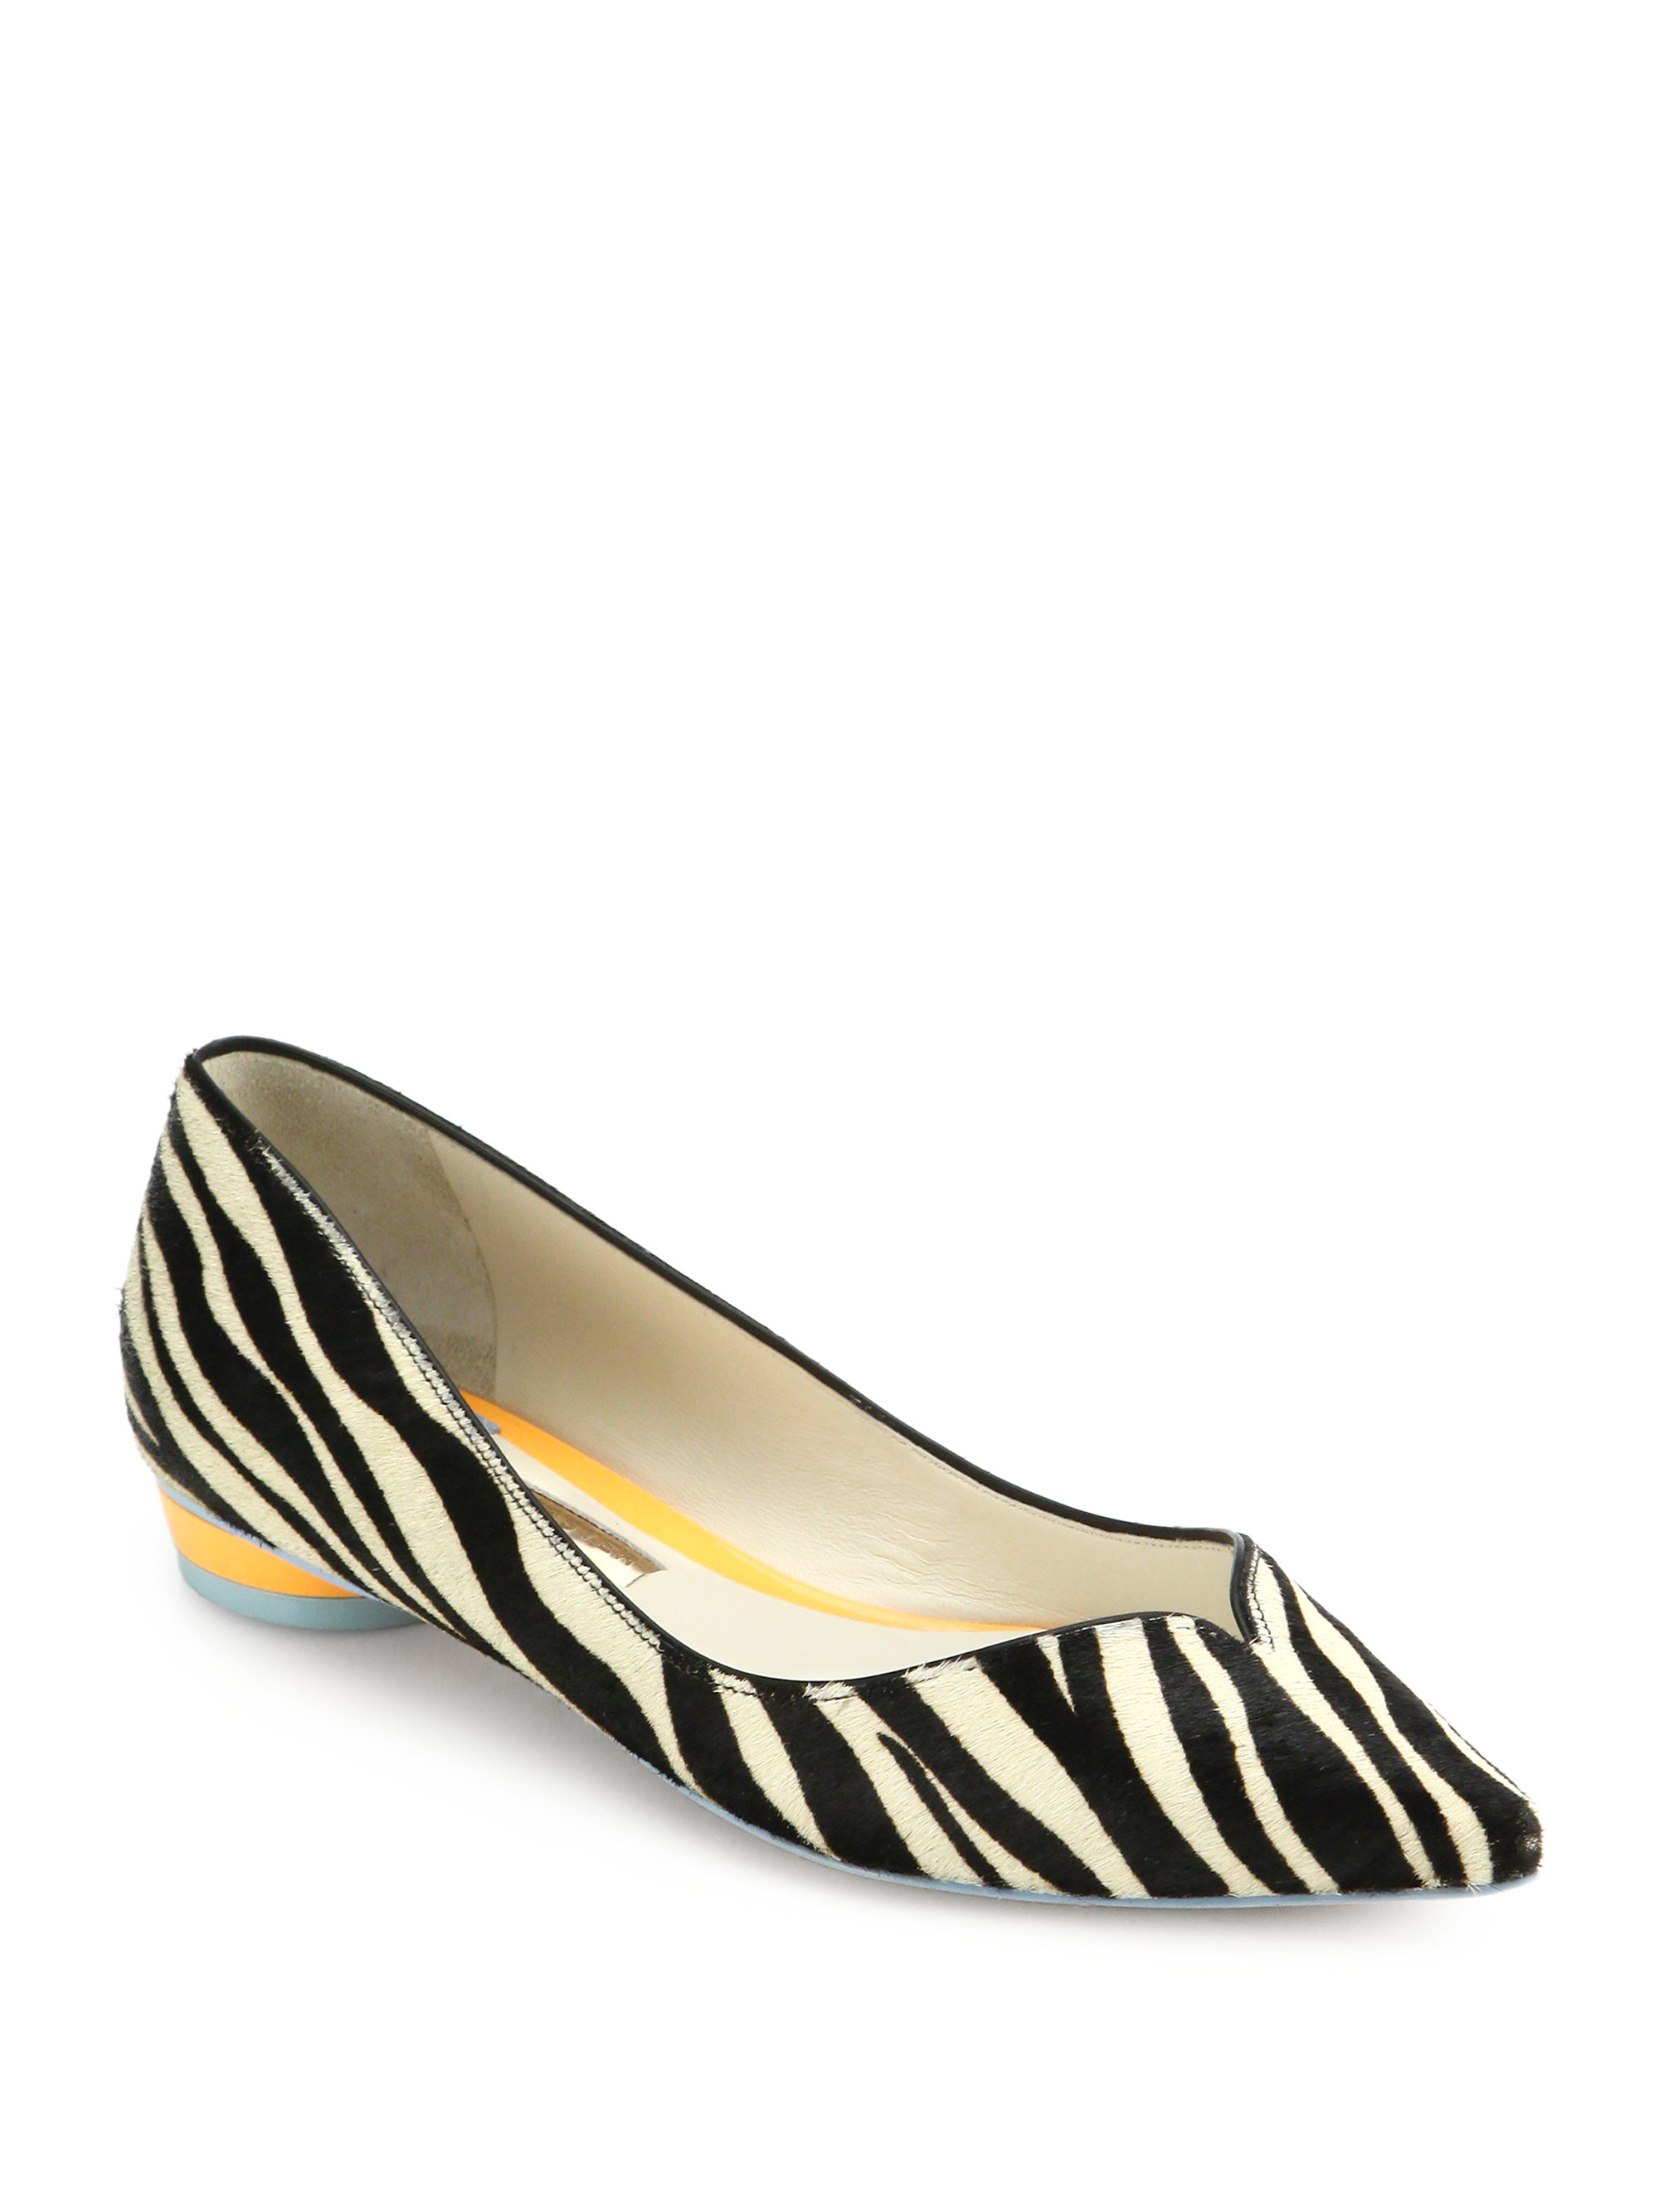 zebra shoes flats